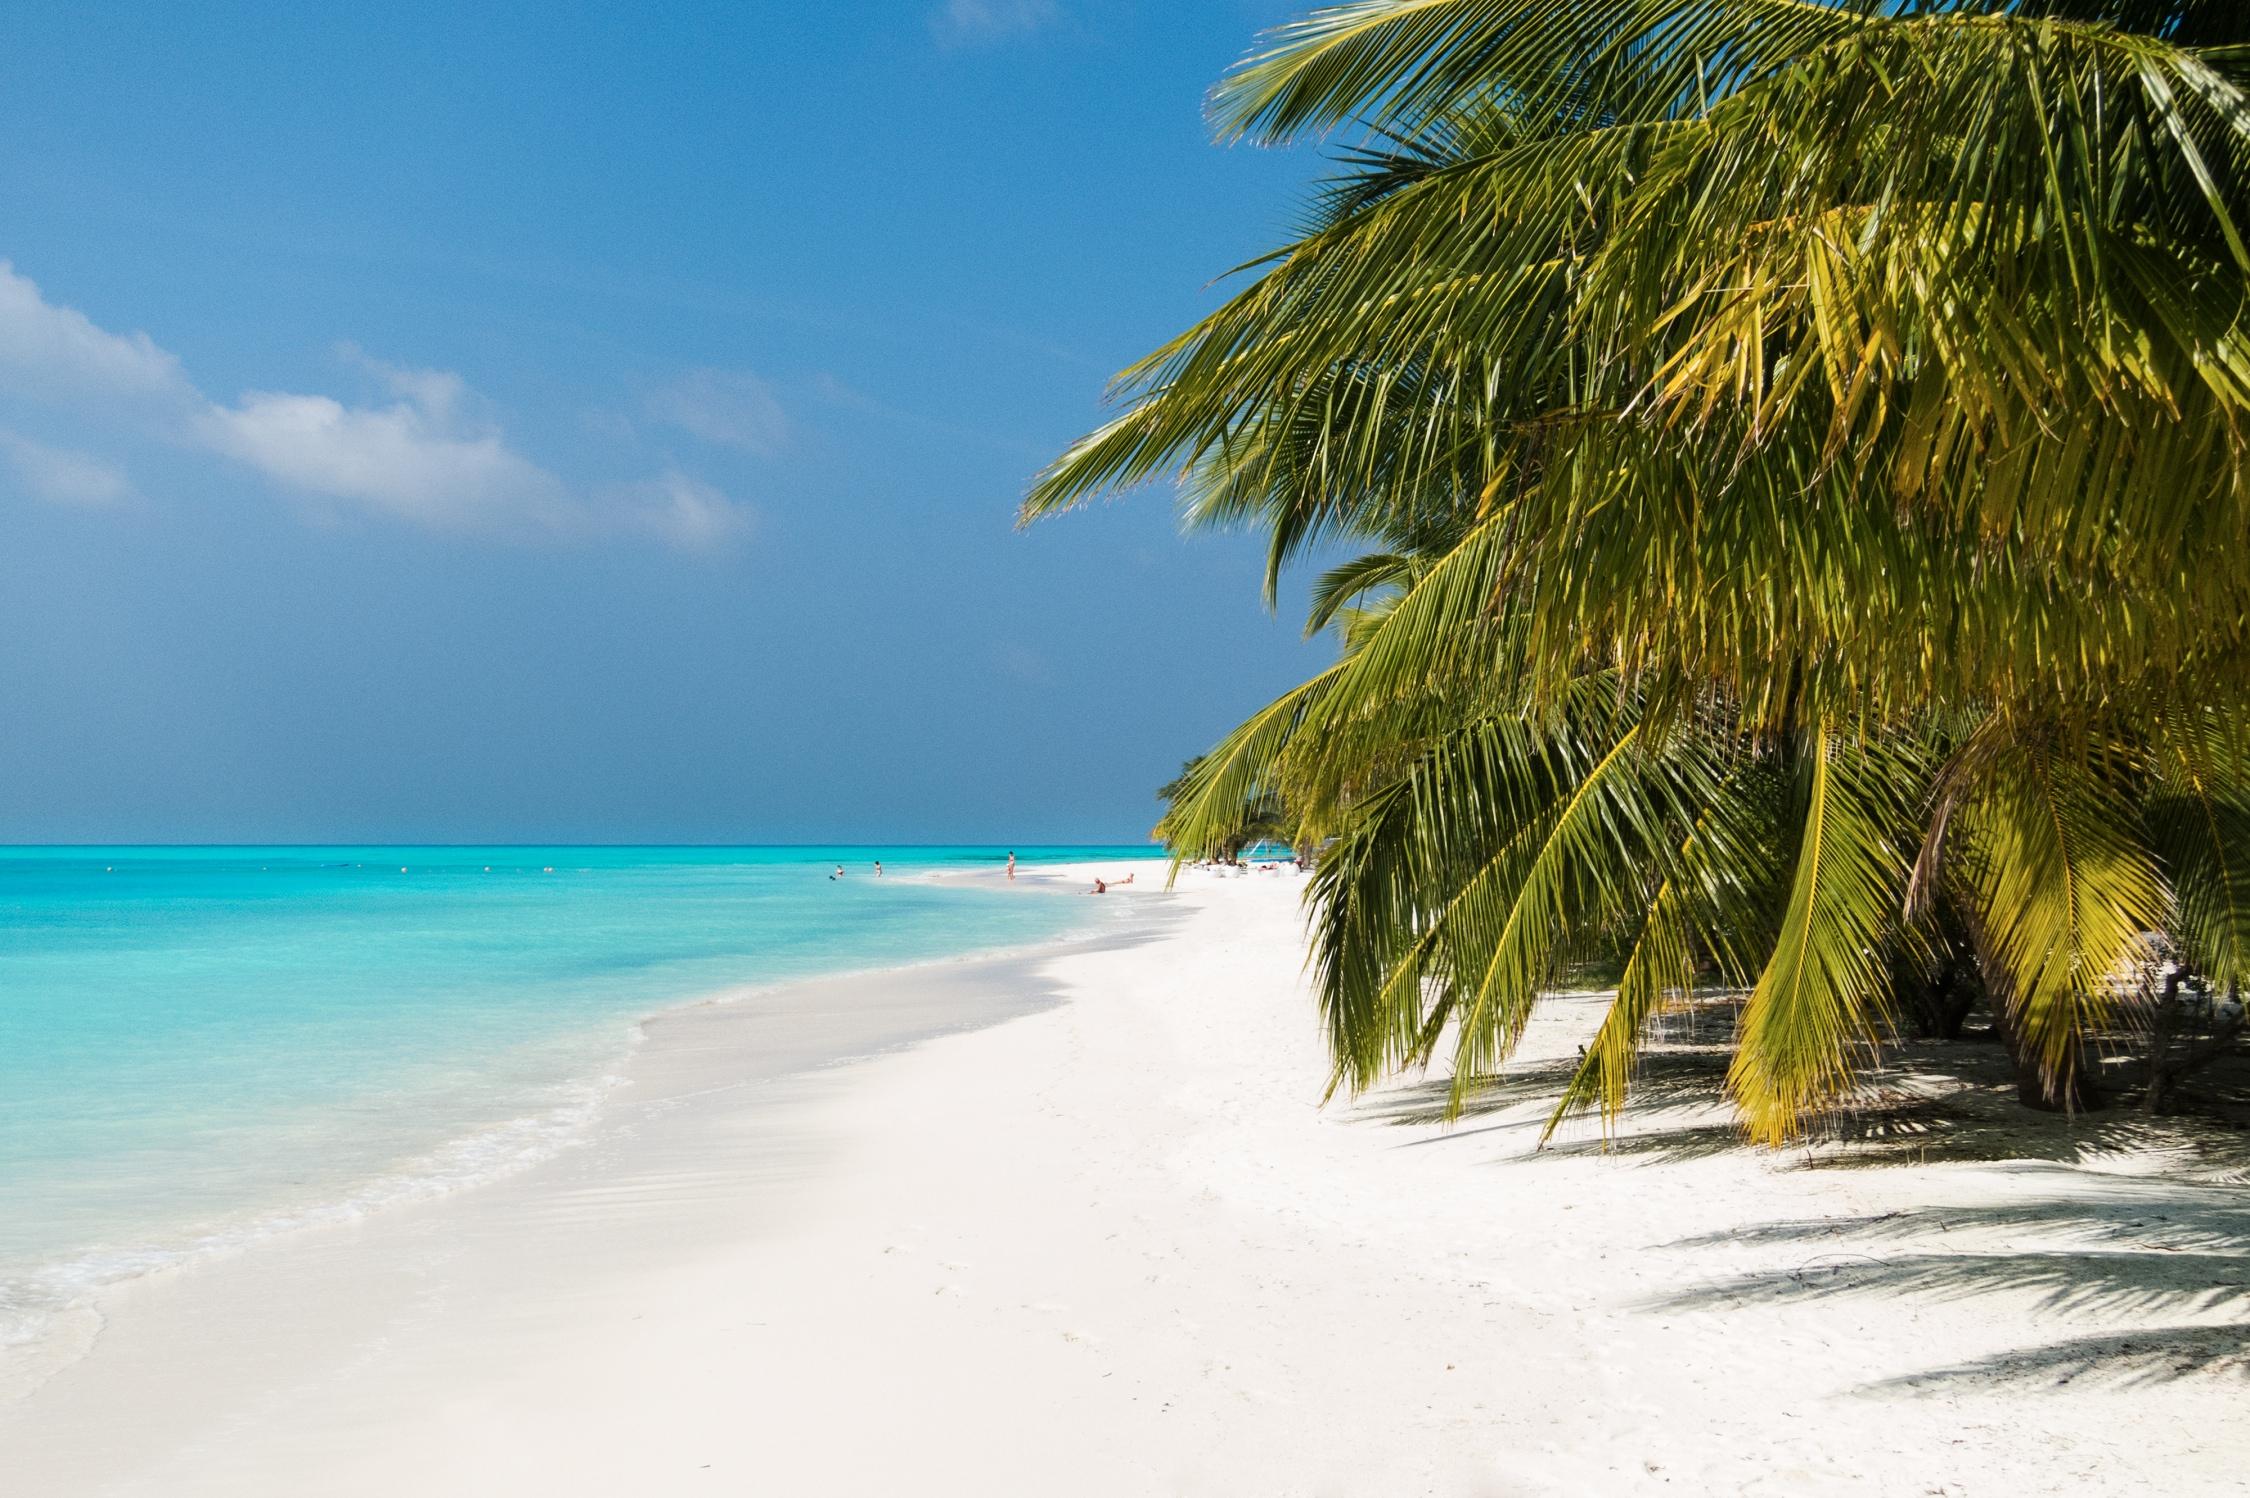 Fotografie cu Meeru Island Resort cu o suprafață de nisip alb